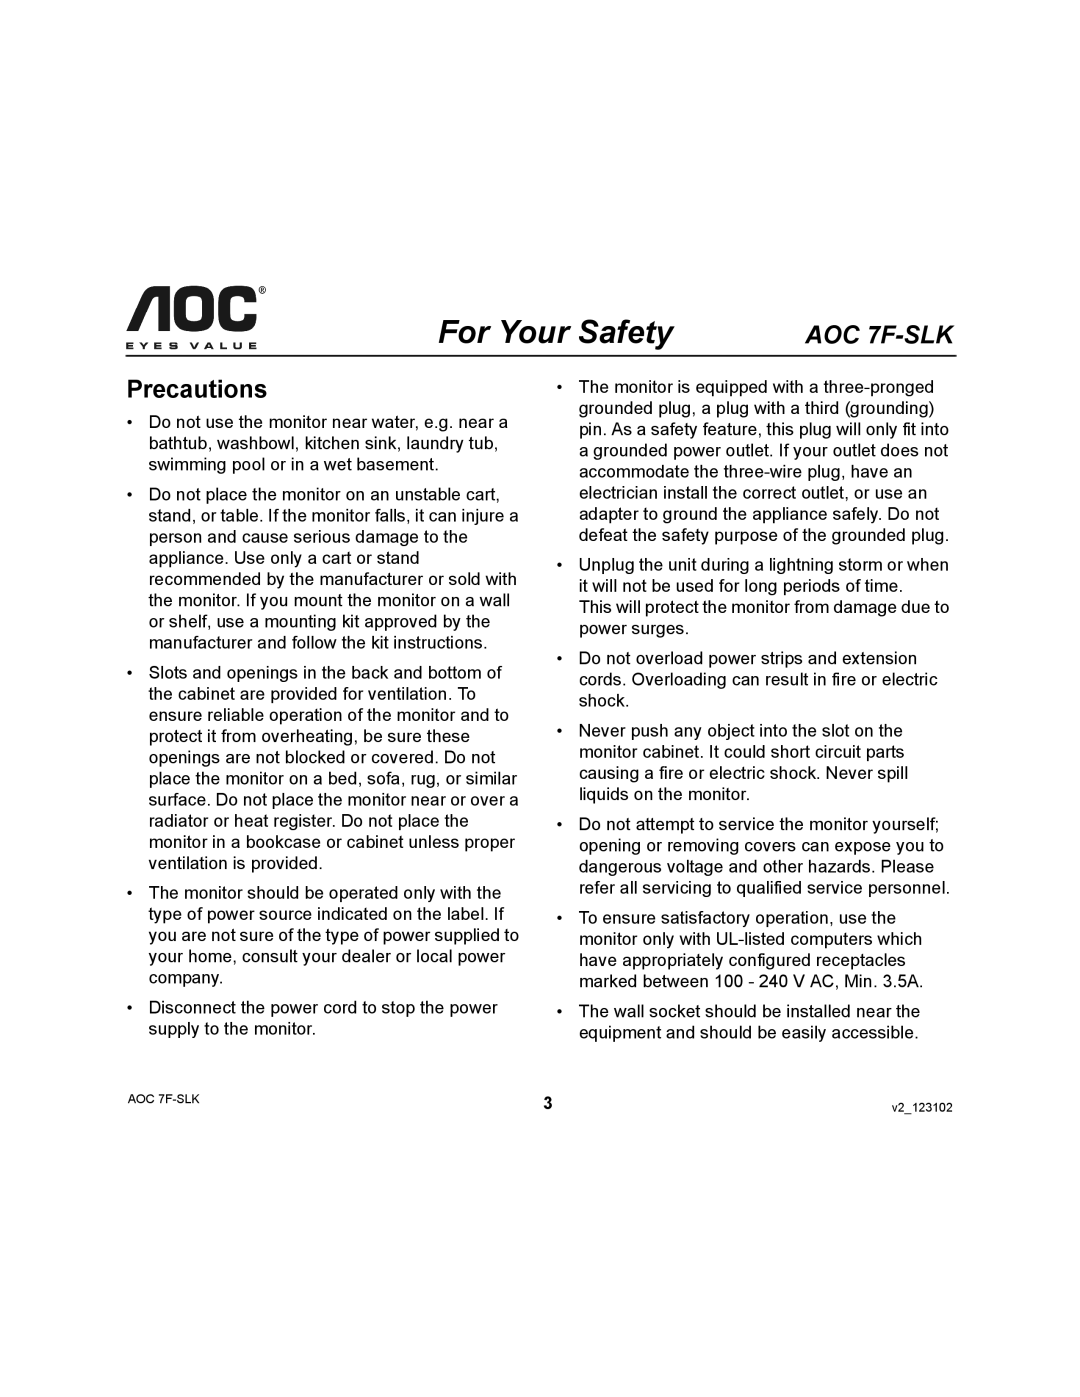 AOC 7F-SLK user manual Precautions 